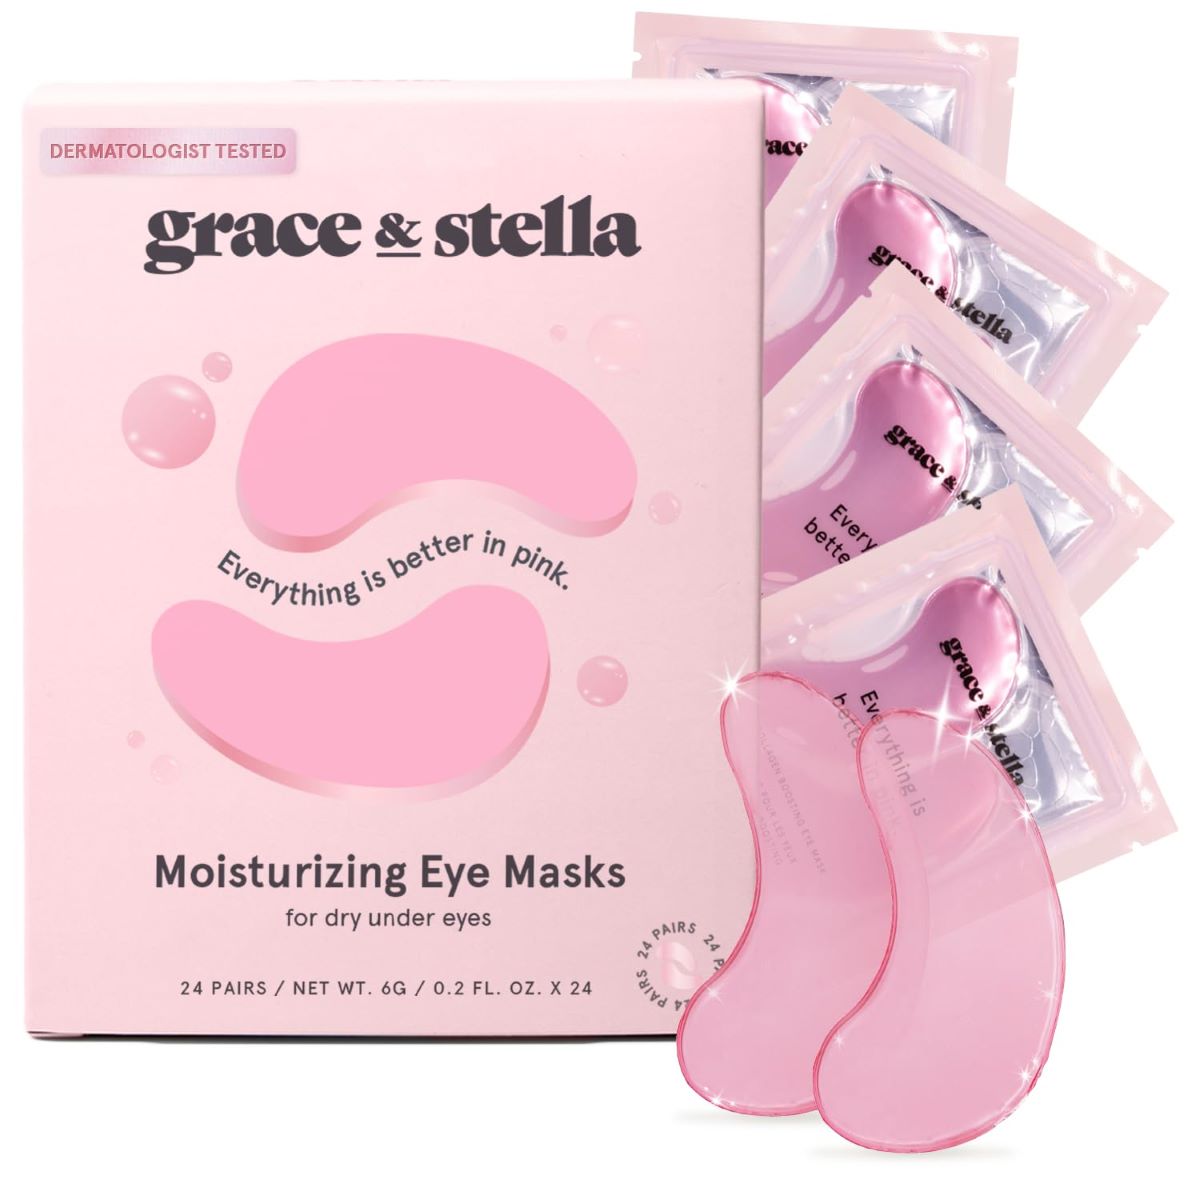 grace & stella Pink Moisturizing Eye Masks